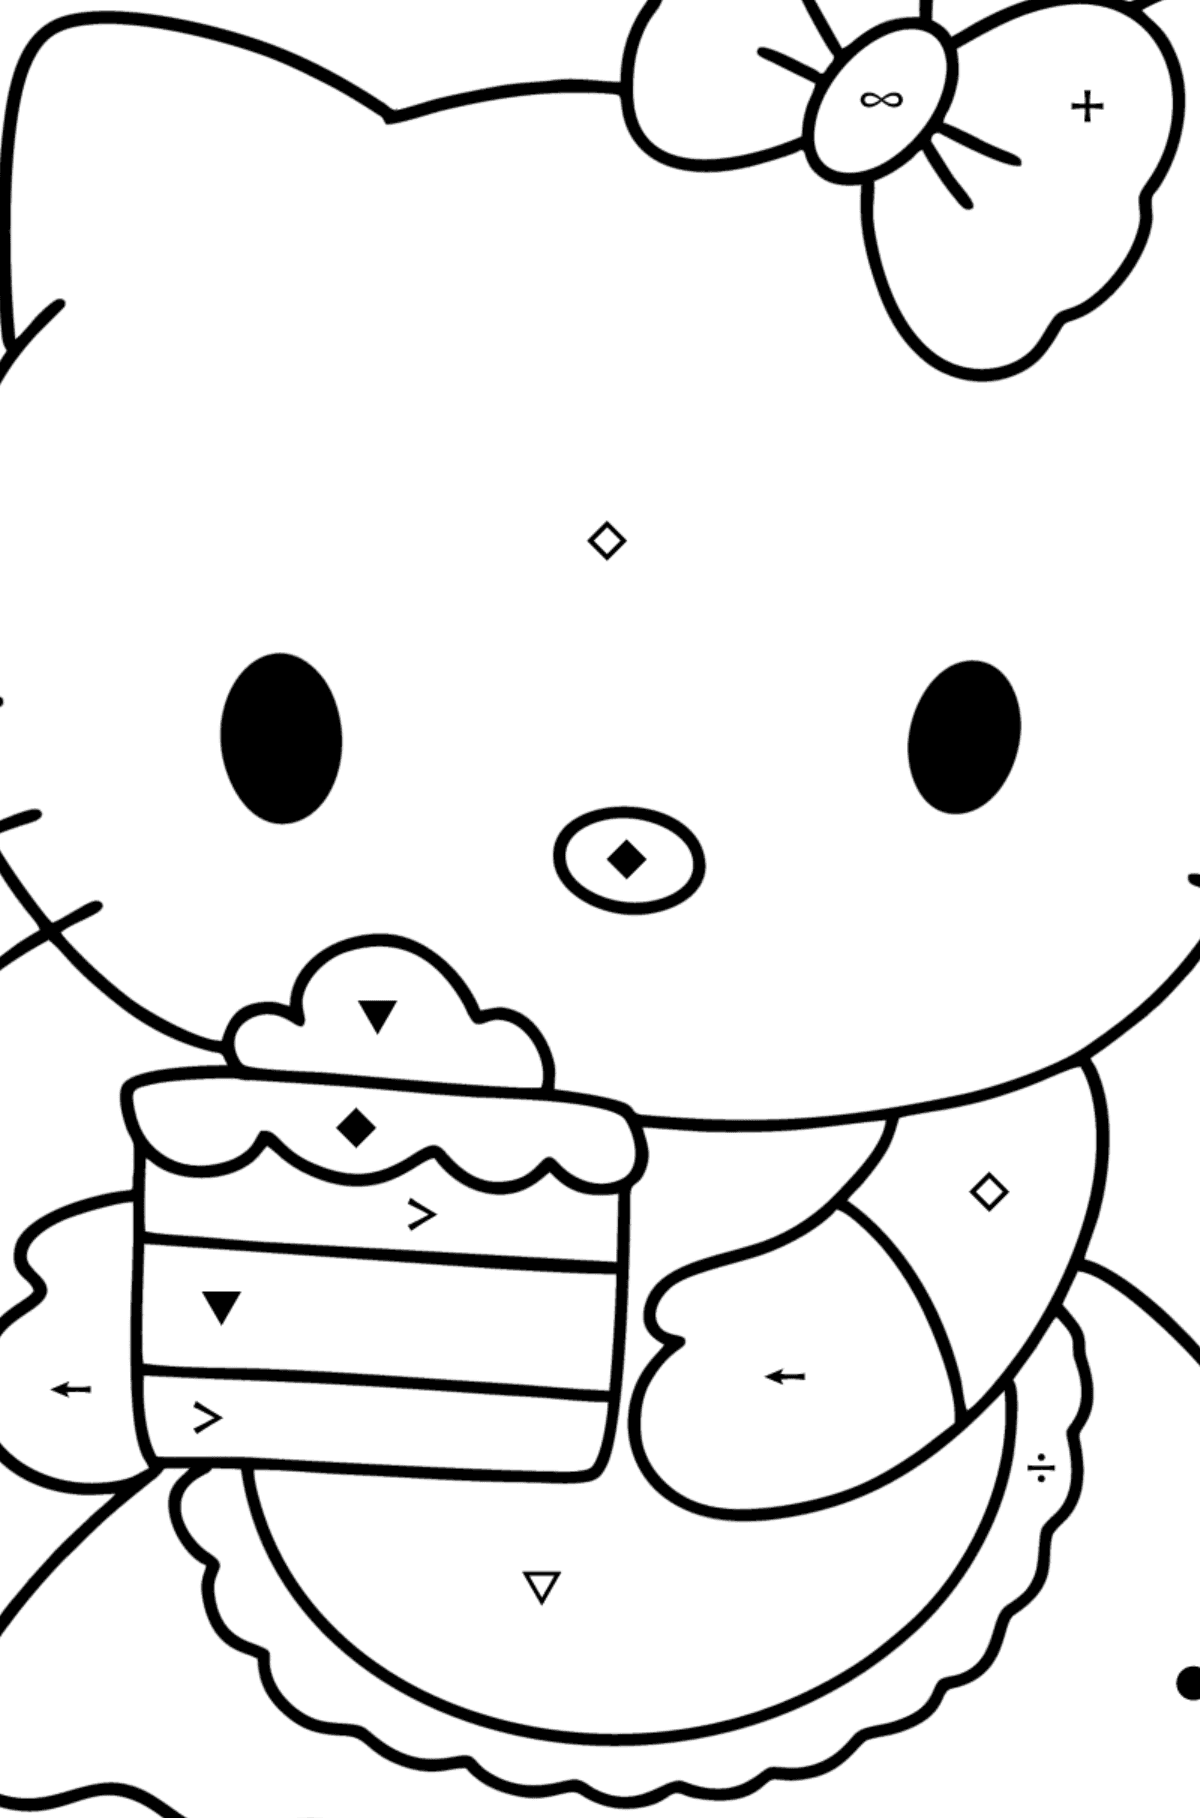 Boyama sayfası Hello Kitty ve pasta - Sembollerle Boyama çocuklar için